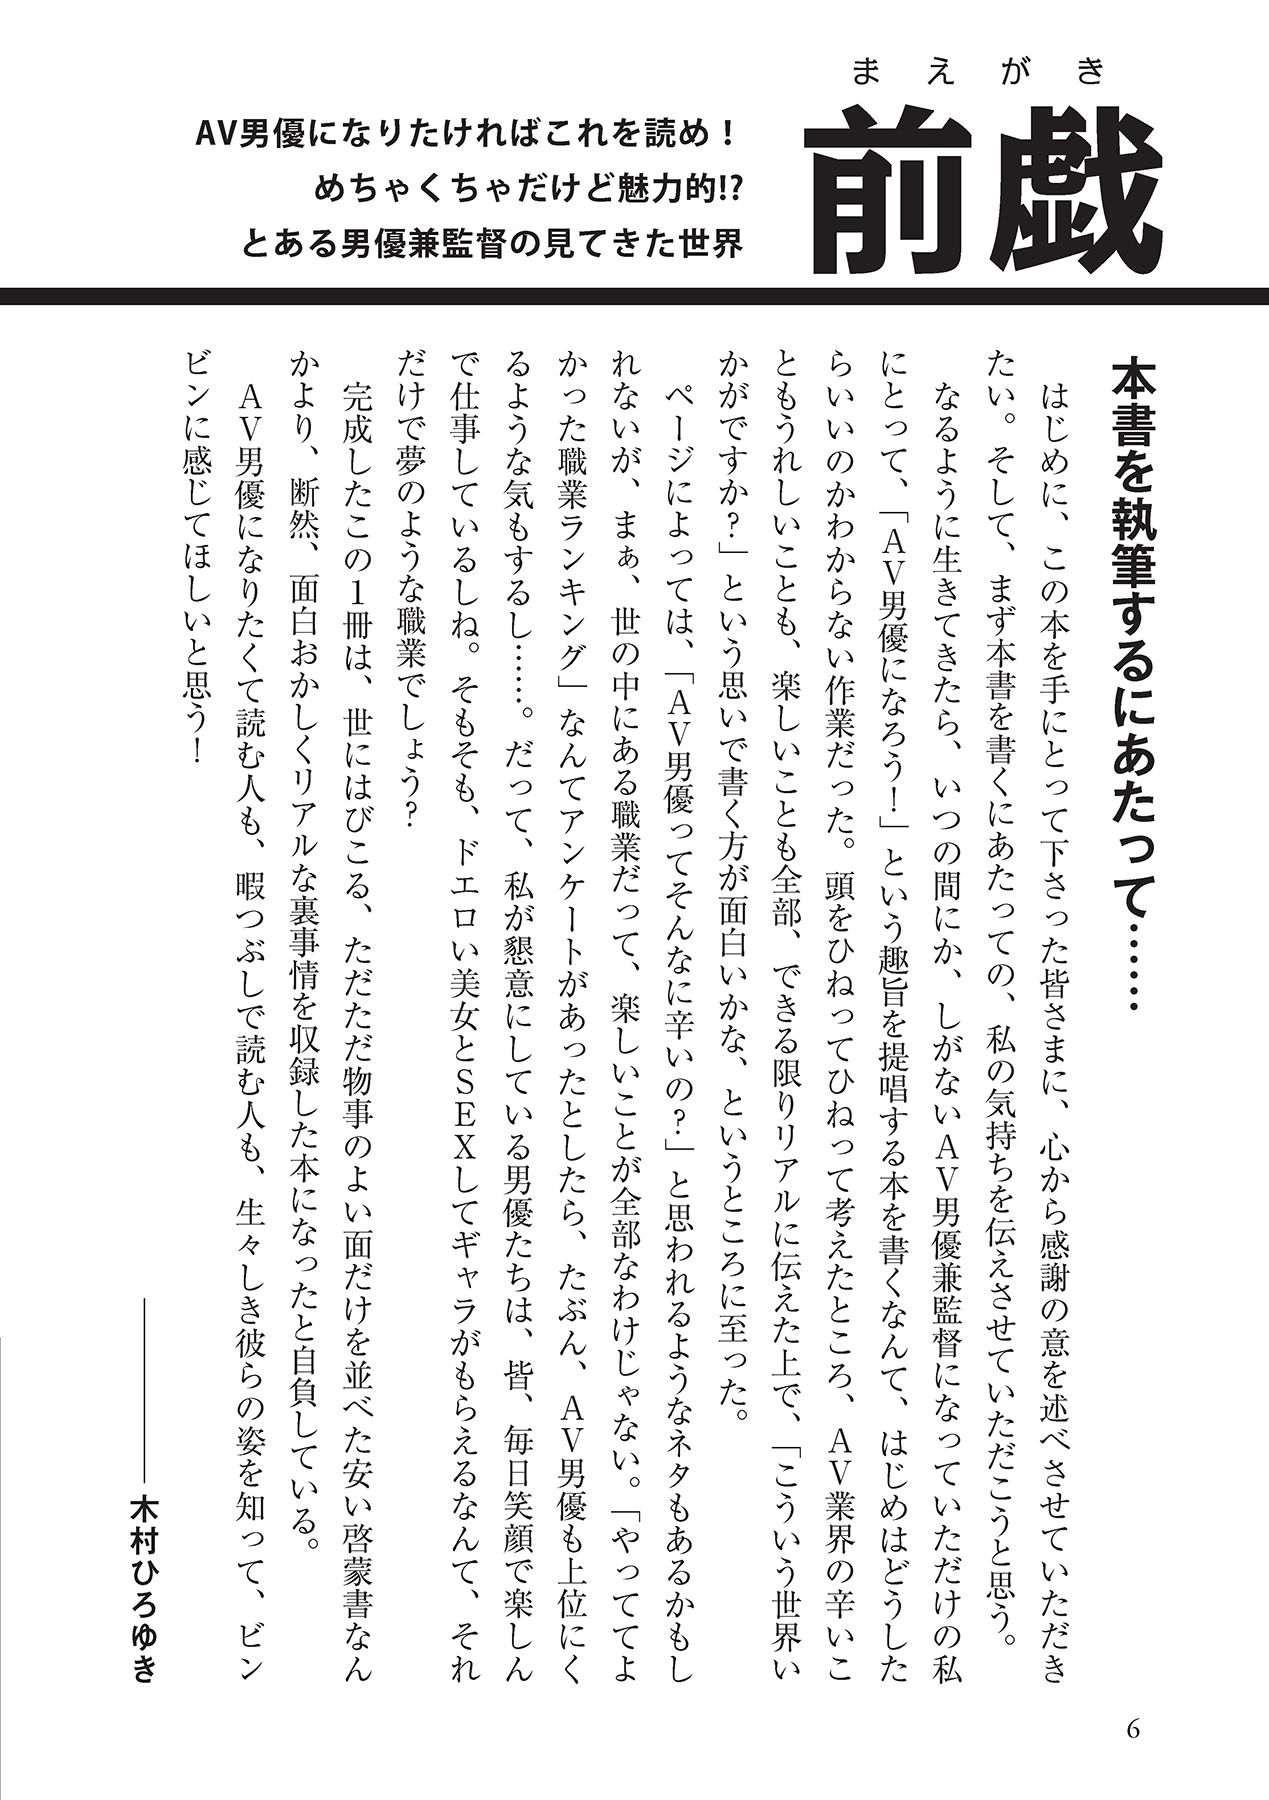 Groupsex AV男優になろう! イラスト版 ヤリすぎッ! Tanned - Page 6